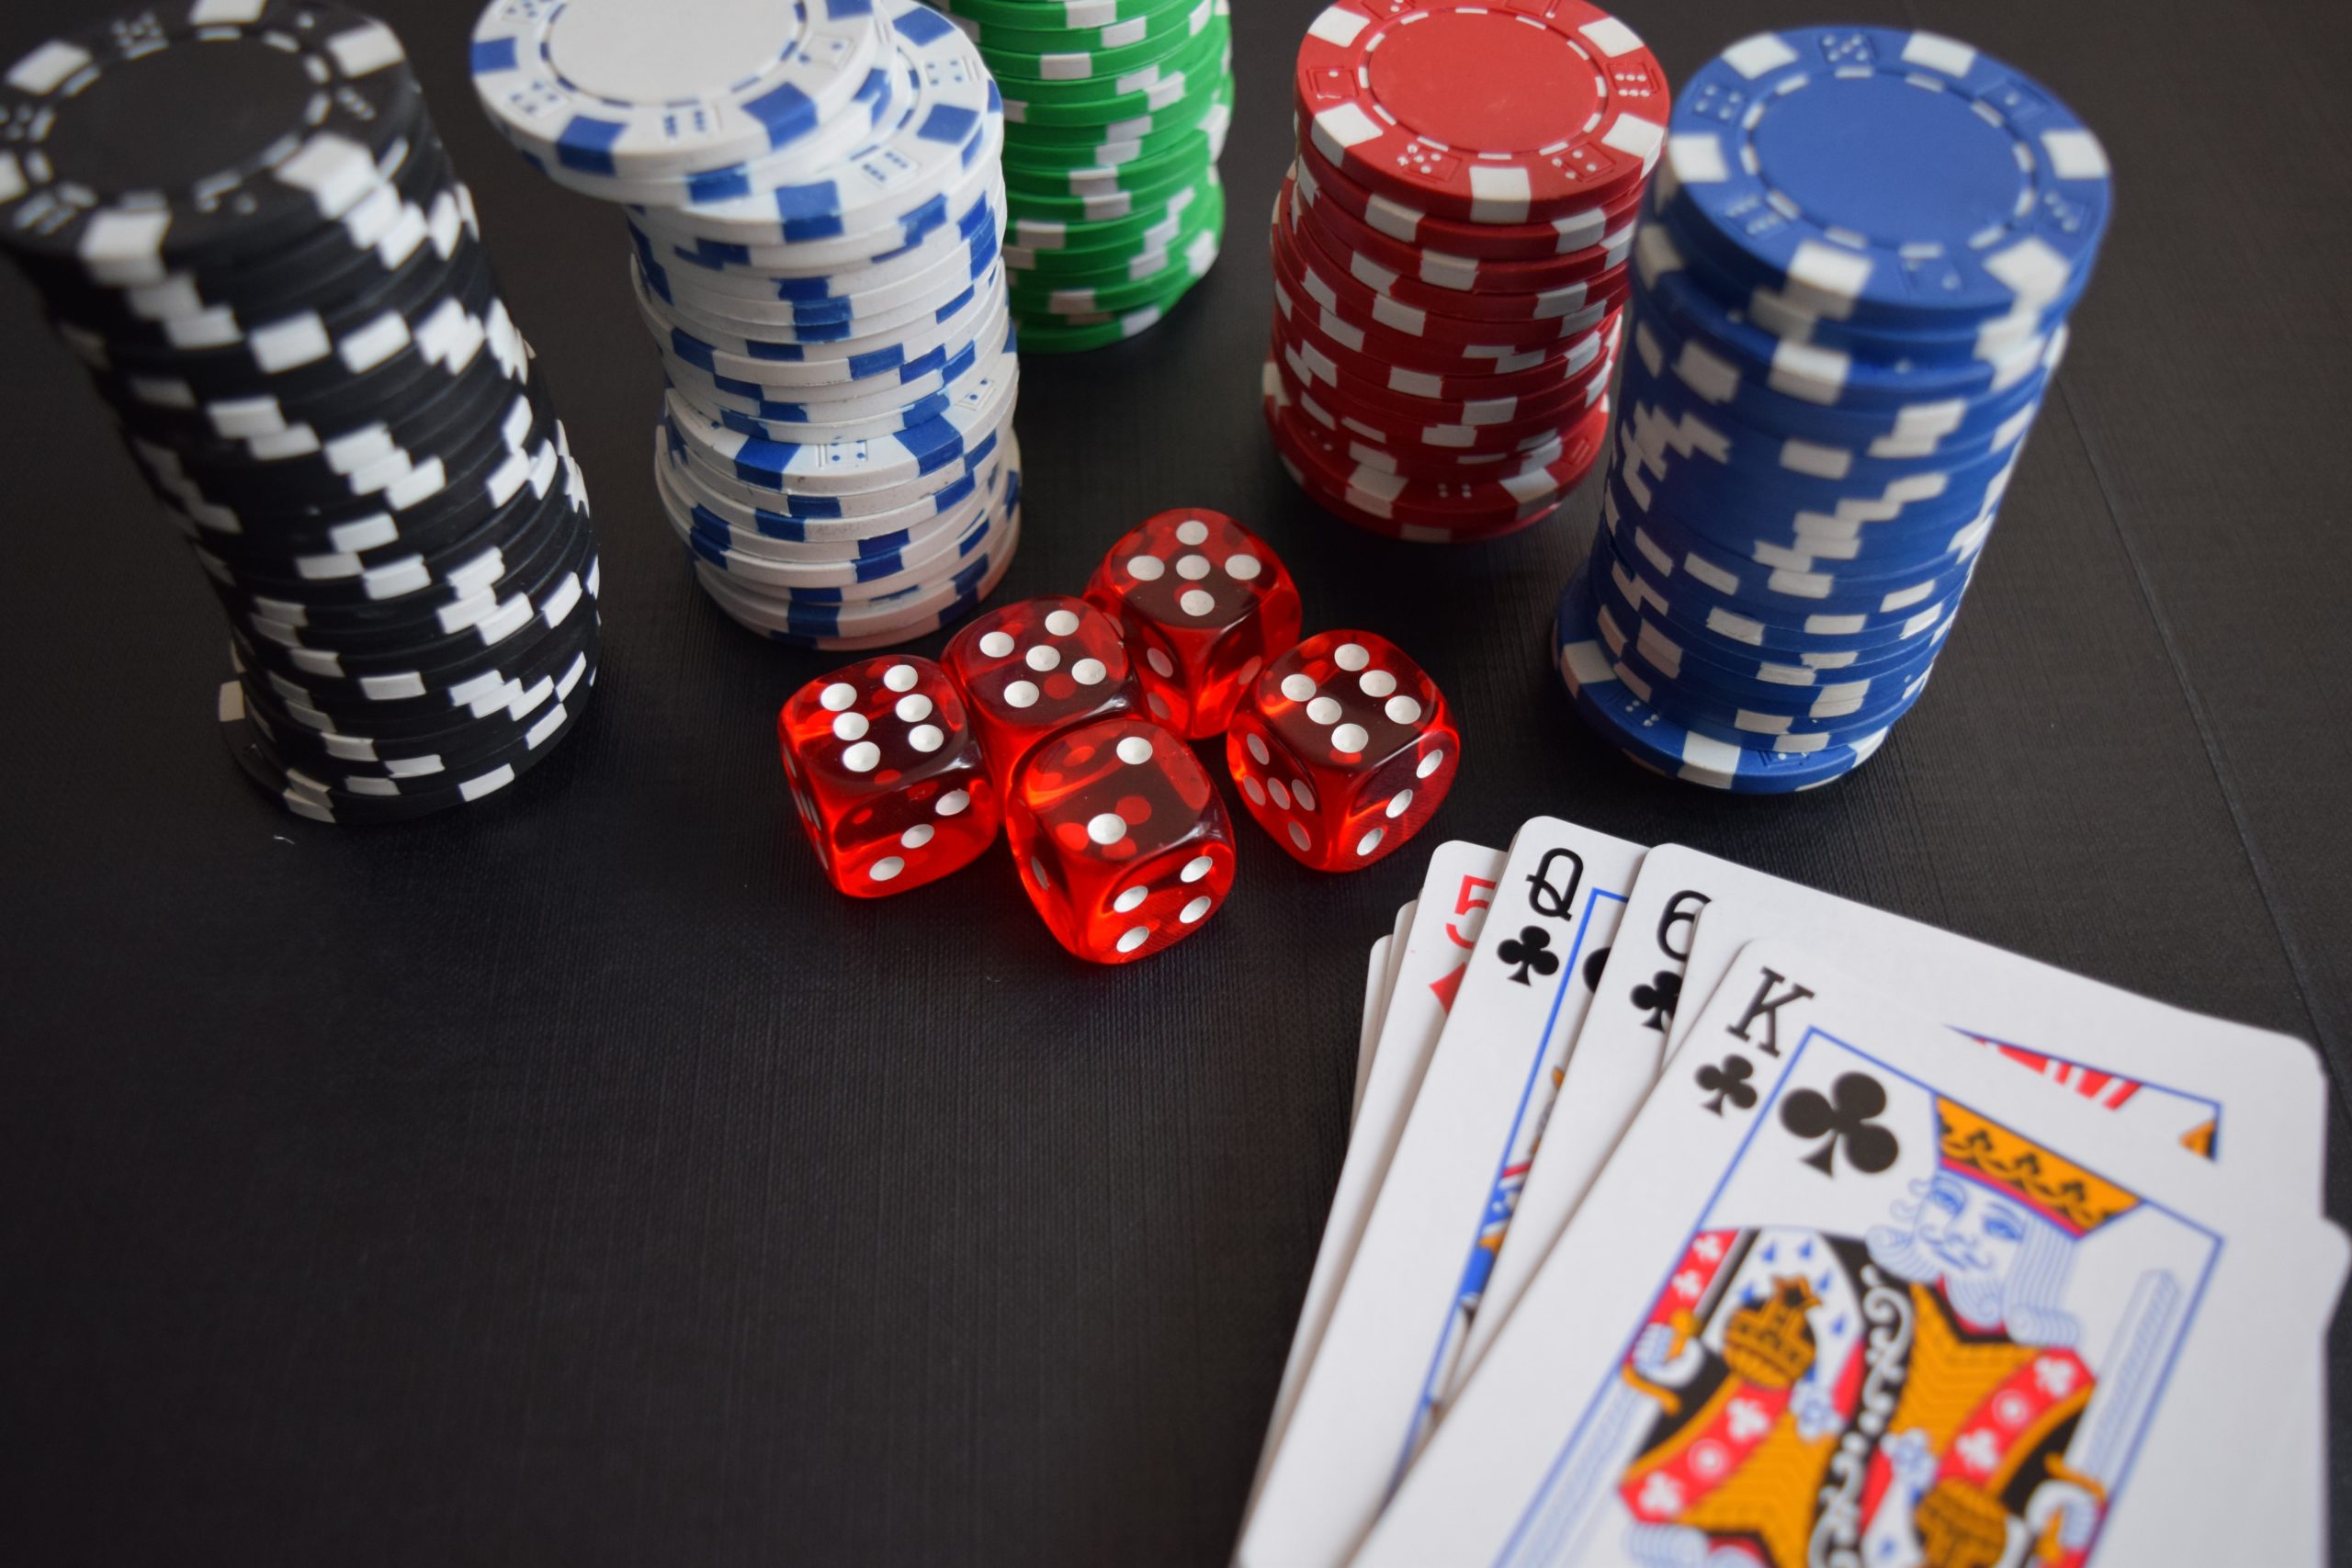 FREE Poker Chip FLAMINGO Blue Diamond Casino Las Vegas Deck of Playing Cards